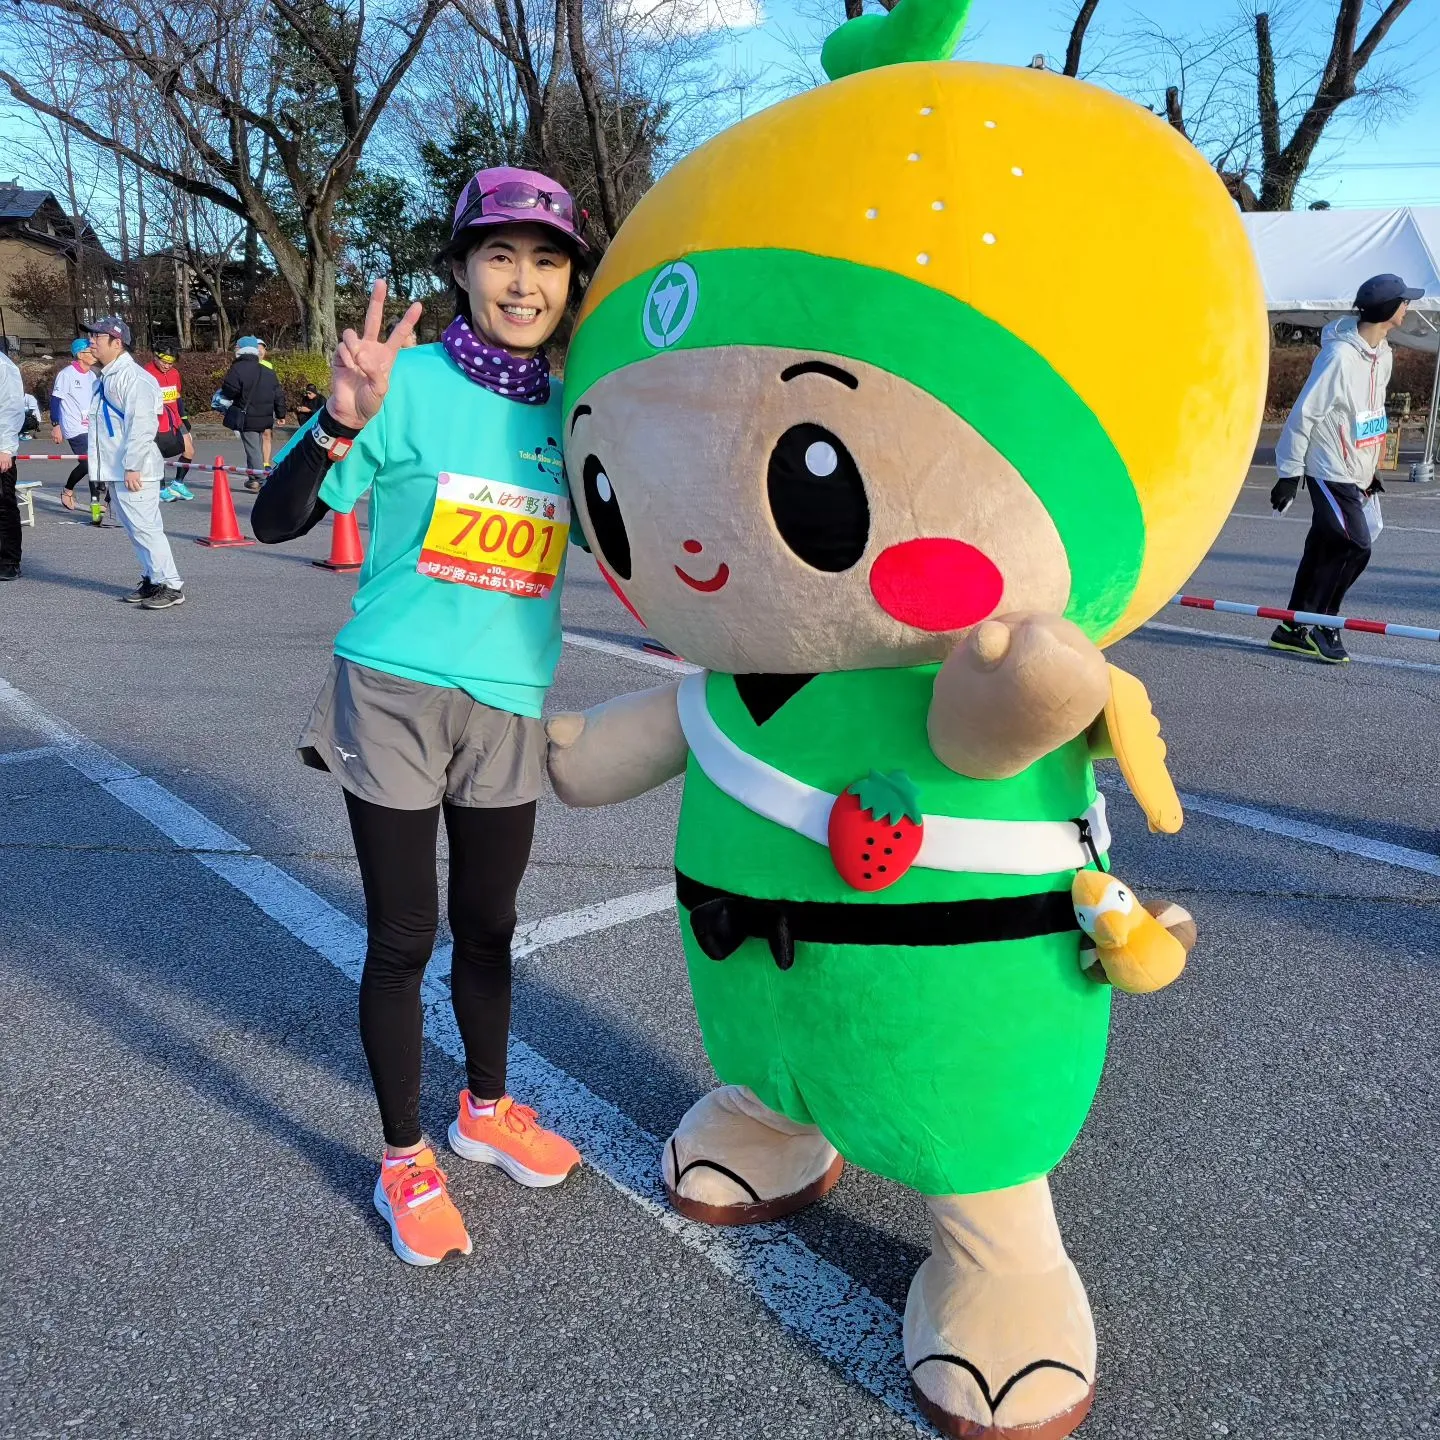 栃木県のはが路マラソンに出て、39都道府県目の完走となりまし...